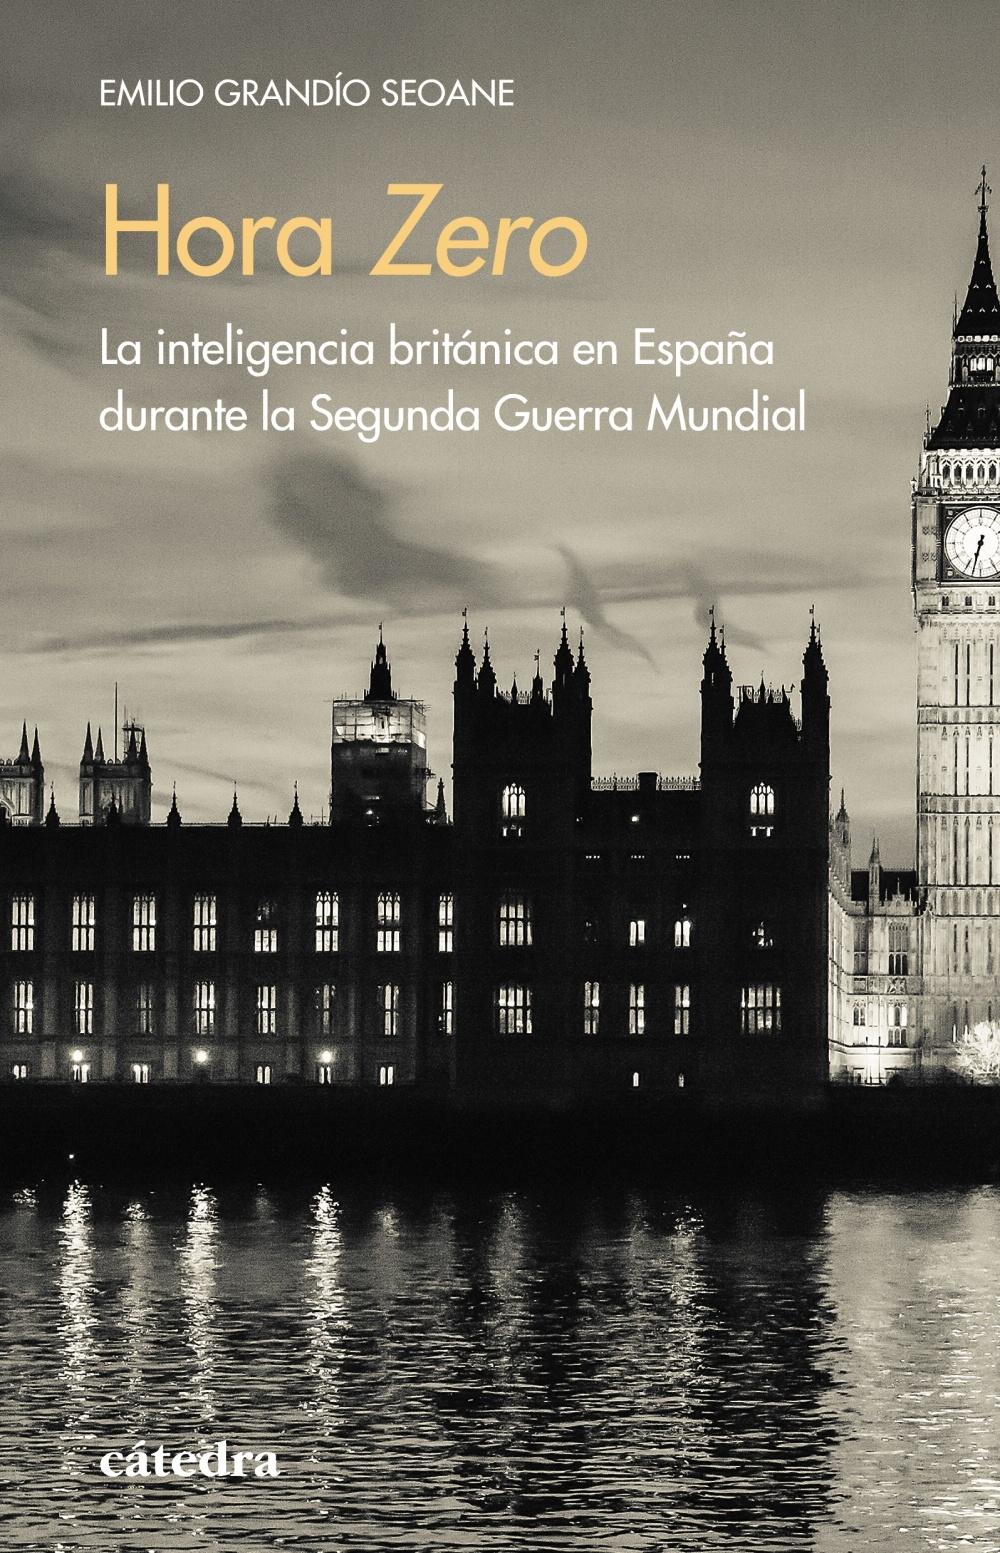 Hora Zero "La inteligencia británica en España durante la Segunda Guerra Mundial"